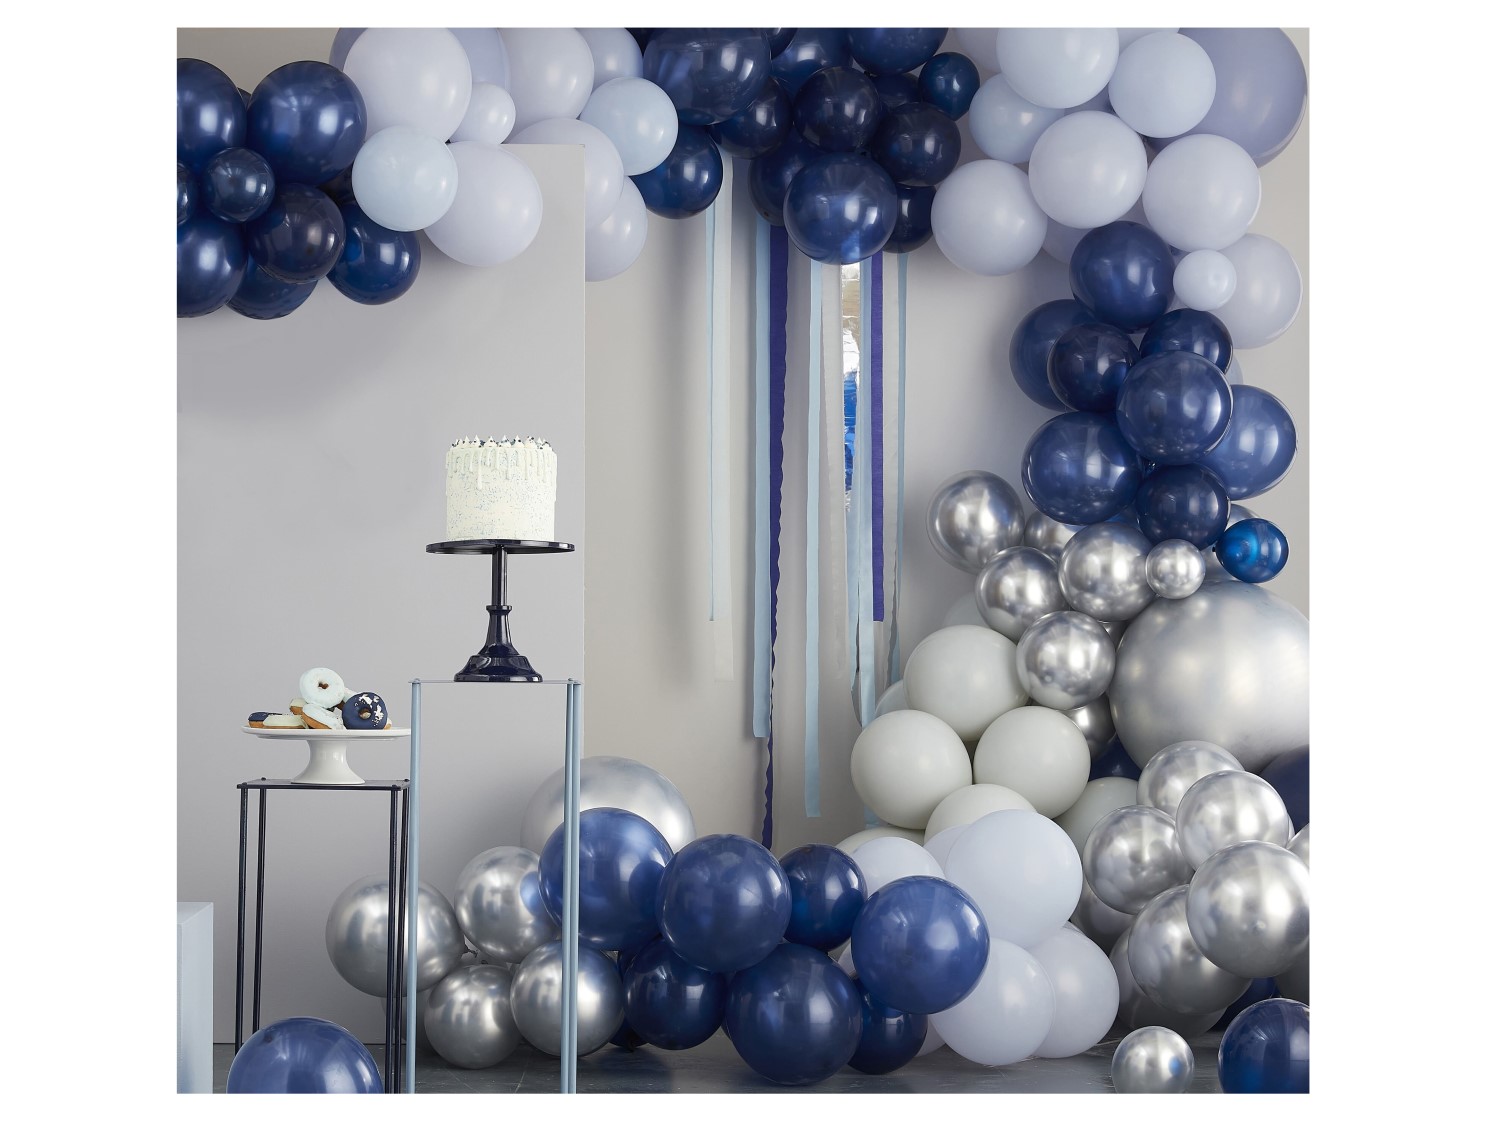 Μικρά λάτεξ μπαλόνια σε μπλε, γαλάζιο και γκρι χρώμα για διακόσμηση σε πάρτυ